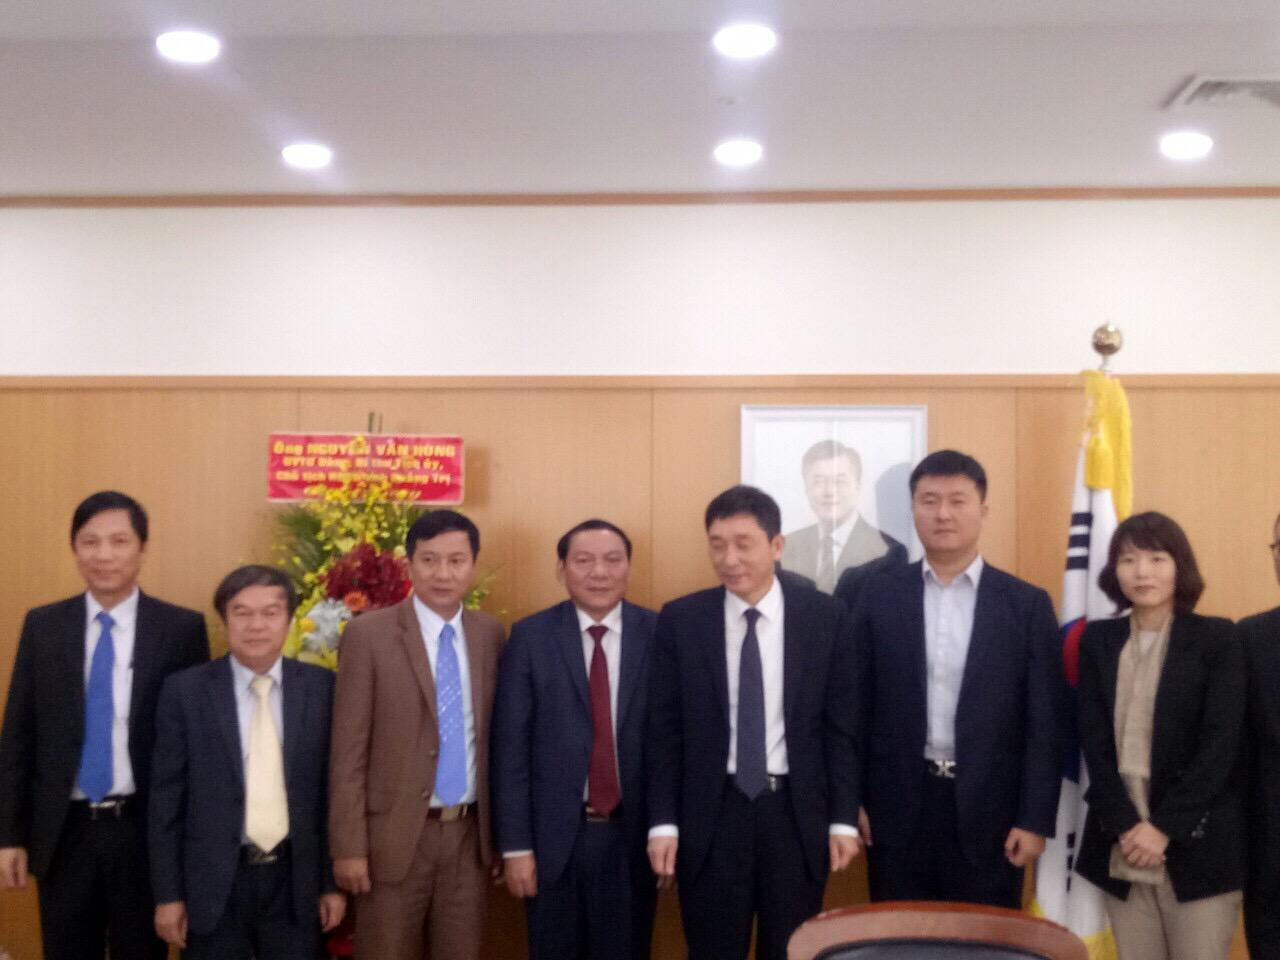 Đồng chí Nguyễn Văn Hùng, Bí thư Tỉnh ủy Quảng Trị làm việc với Đại sứ Hàn Quốc